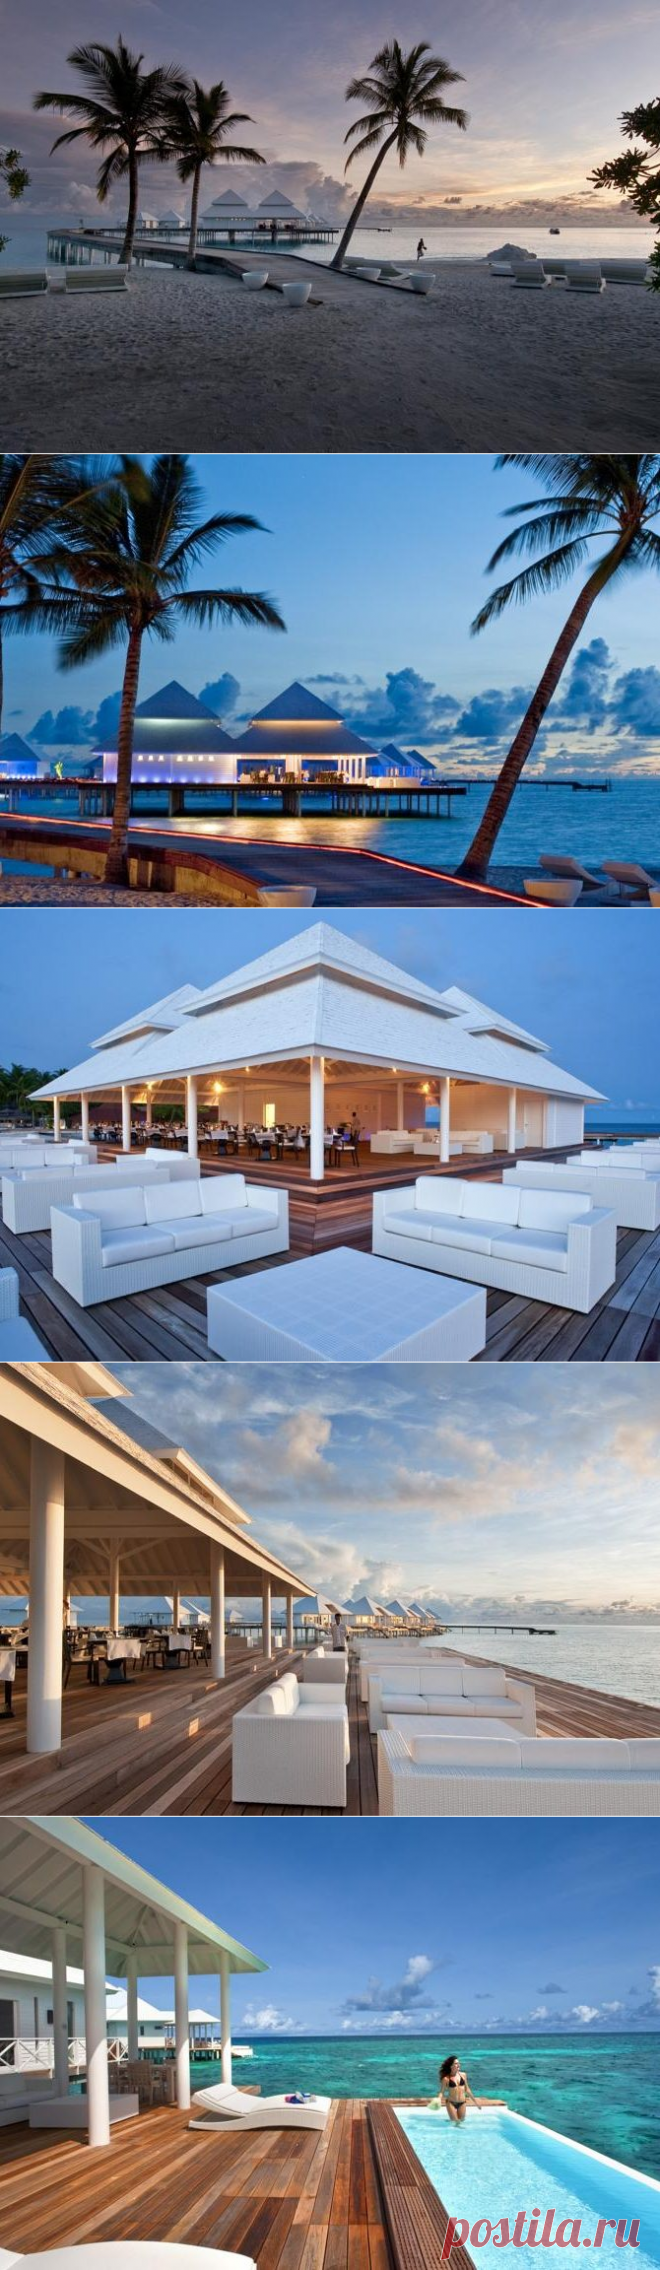 Мальдивы отели 5 звезд все включено: райский отдых на краю мира